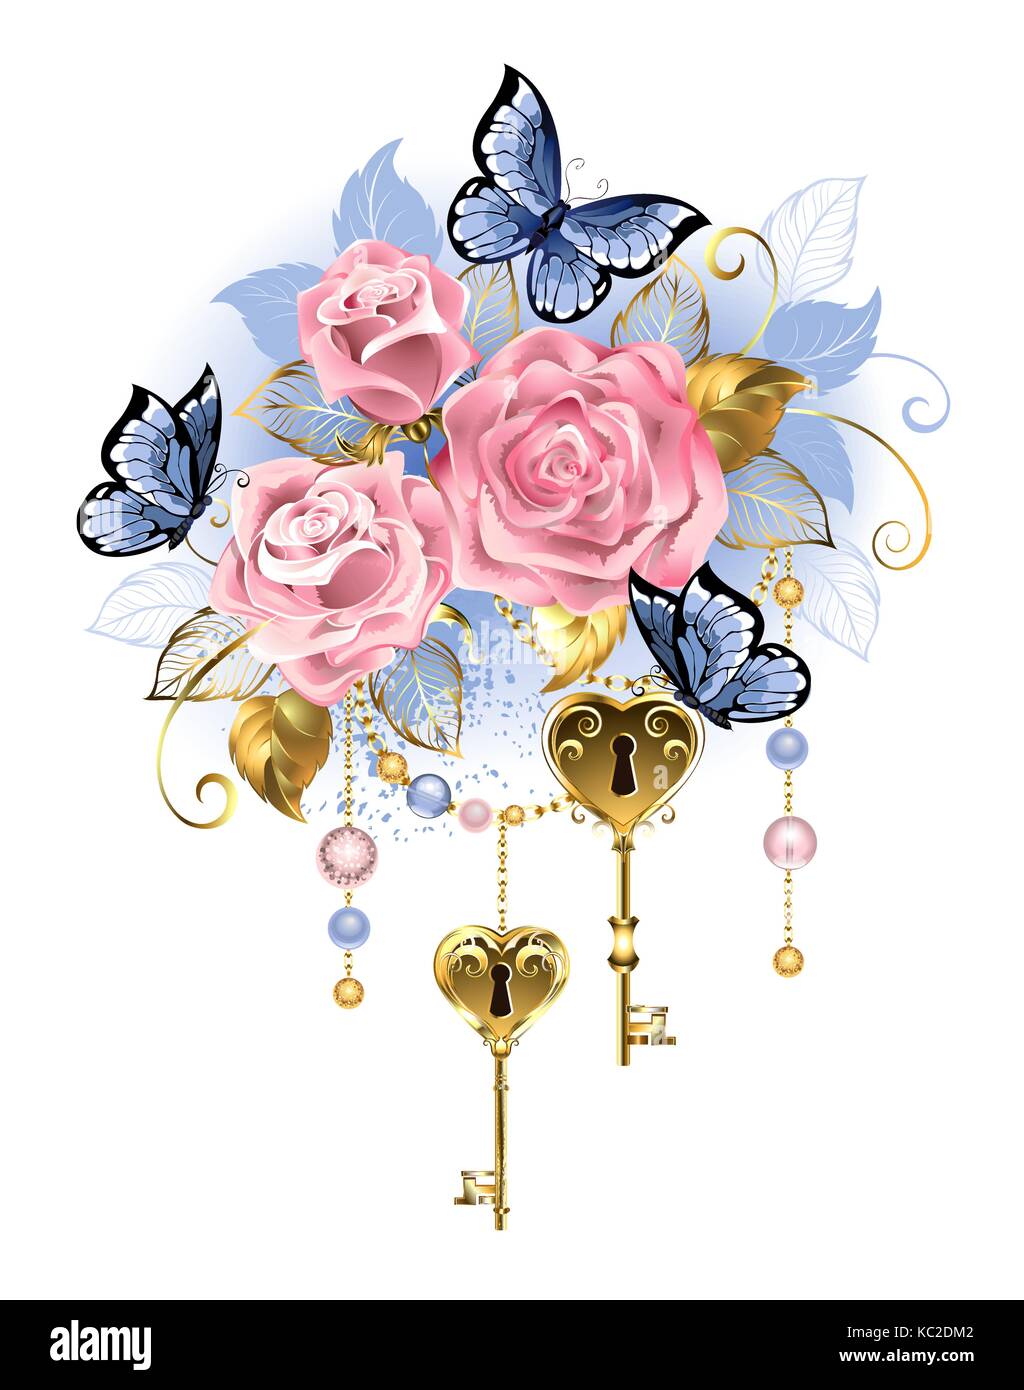 Les clés d'or antique avec des roses rose, des feuilles d'or et papillons bleus sur fond blanc. design avec des roses.. Couleurs tendance rose rose rose pinte. Illustration de Vecteur